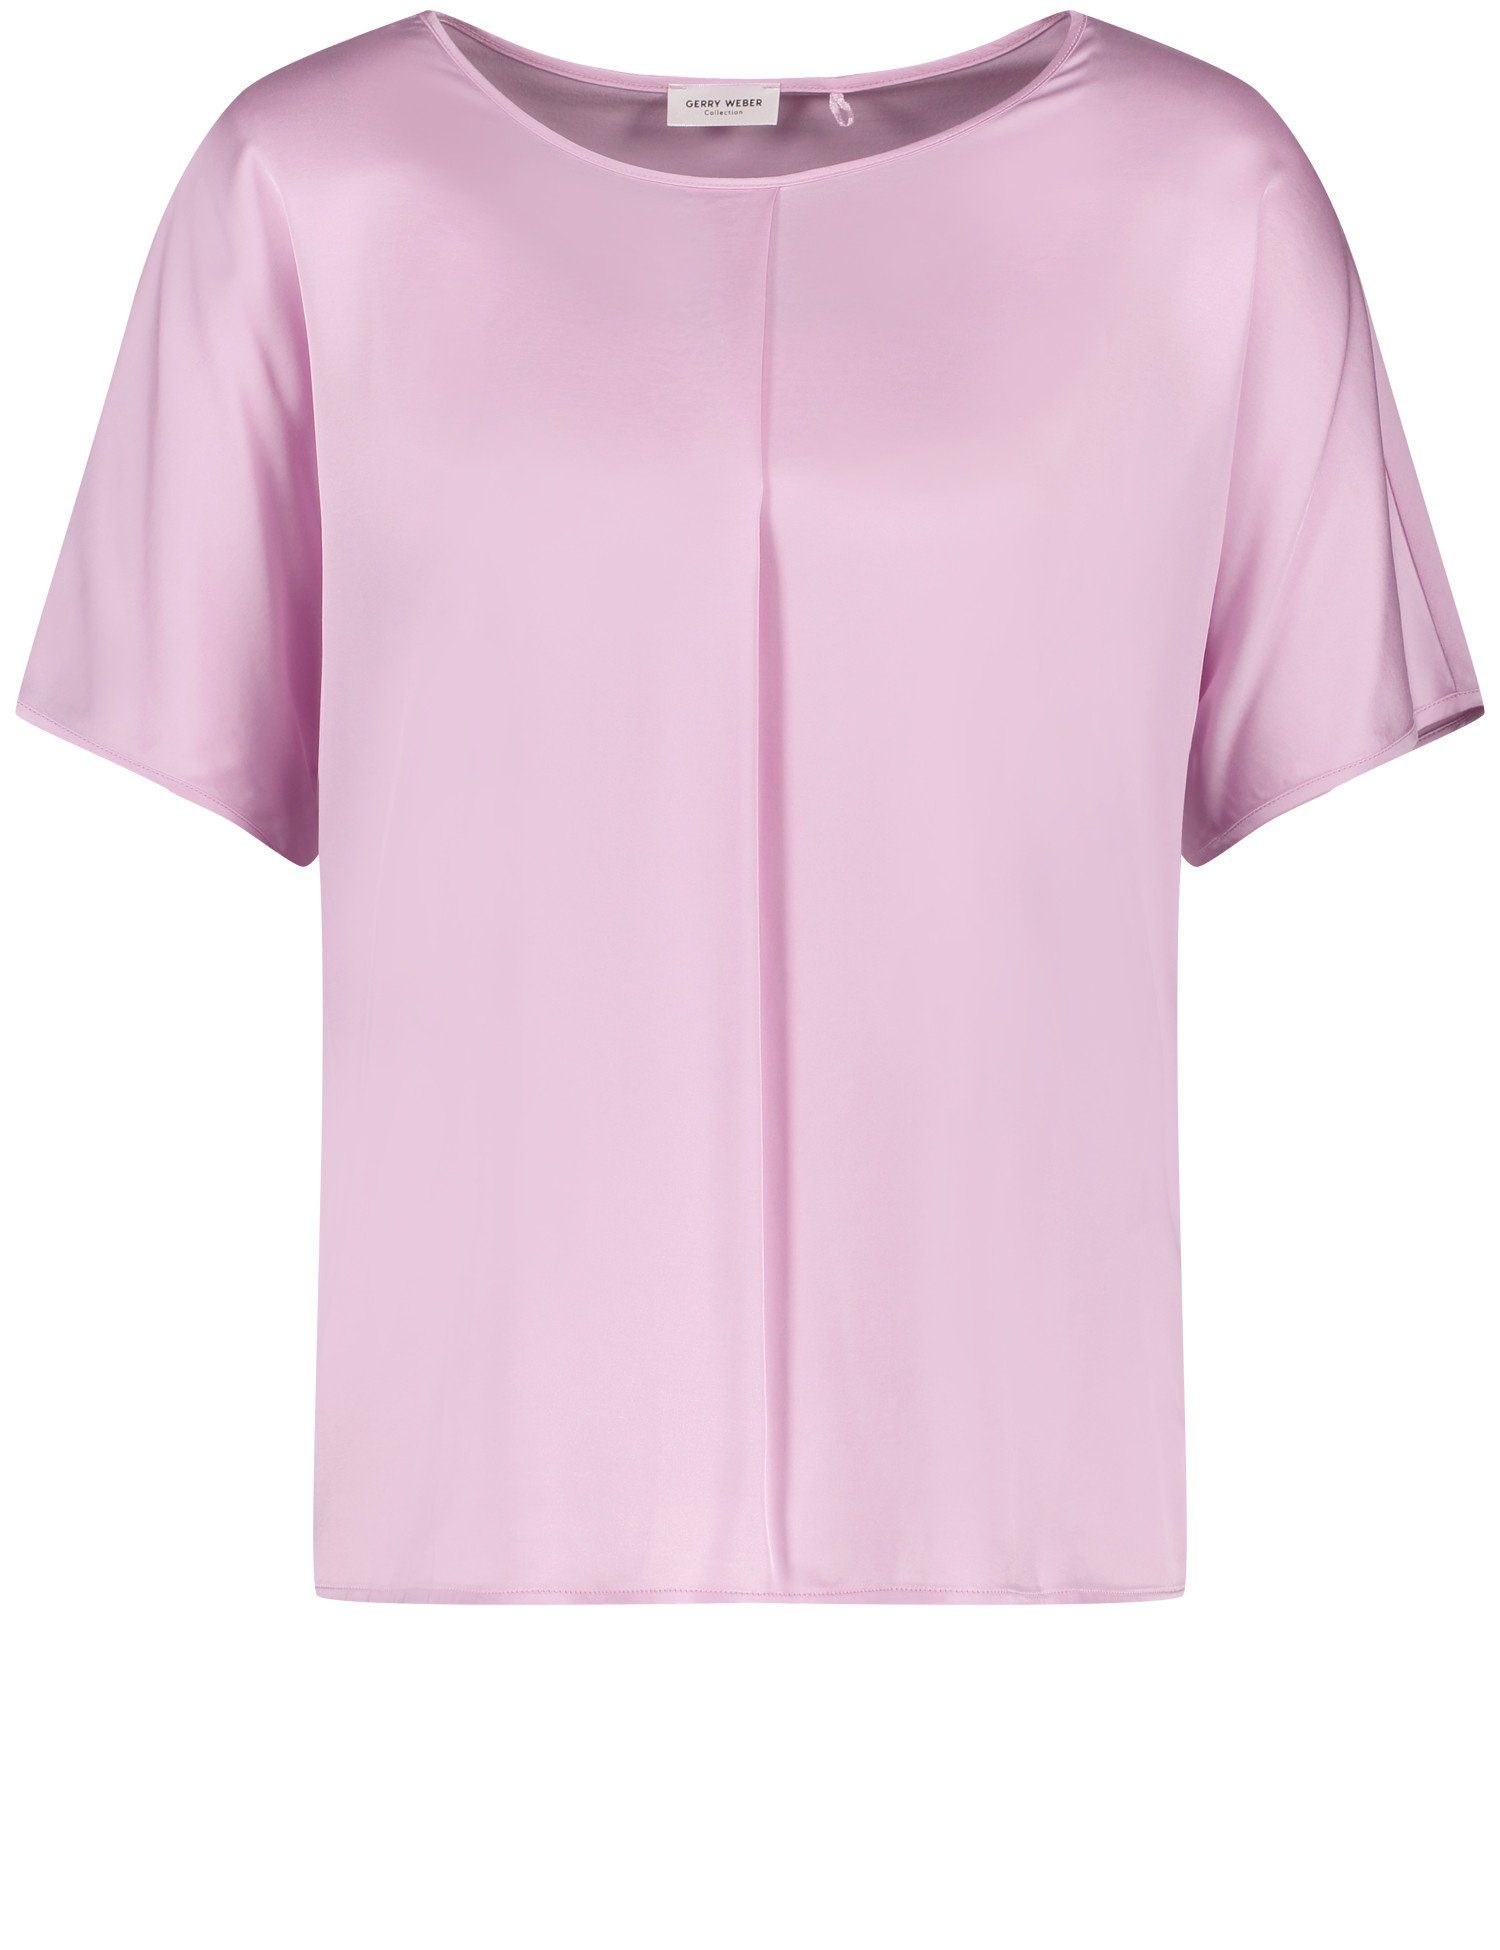 GERRY WEBER Schlupfbluse Blusenshirt Mit Gelegter Falte Am Ausschnitt powder pink